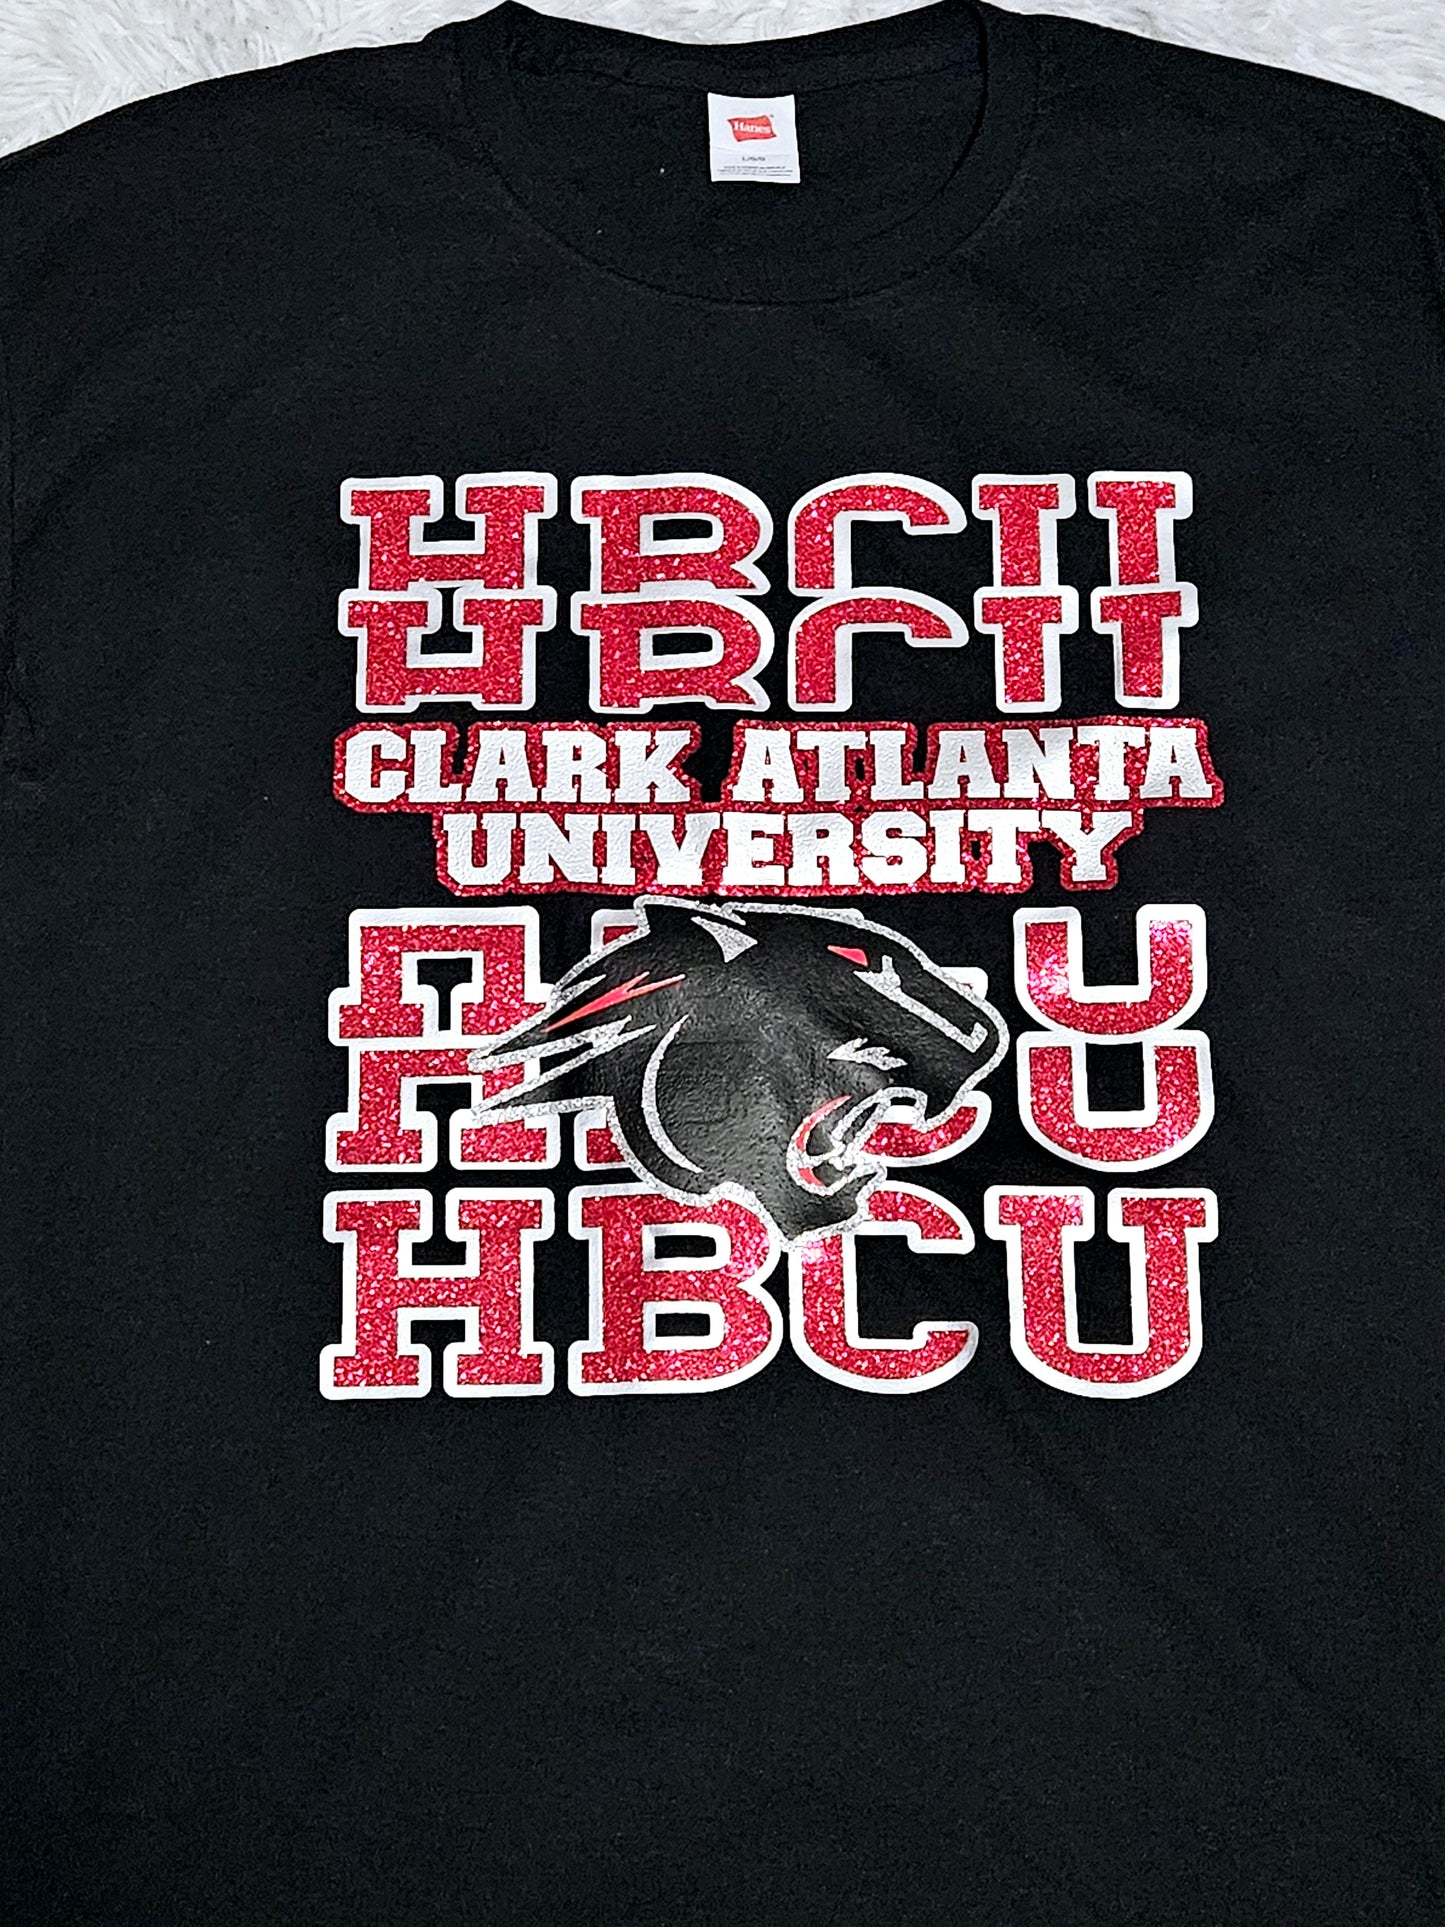 HBCU Clark Atlanta